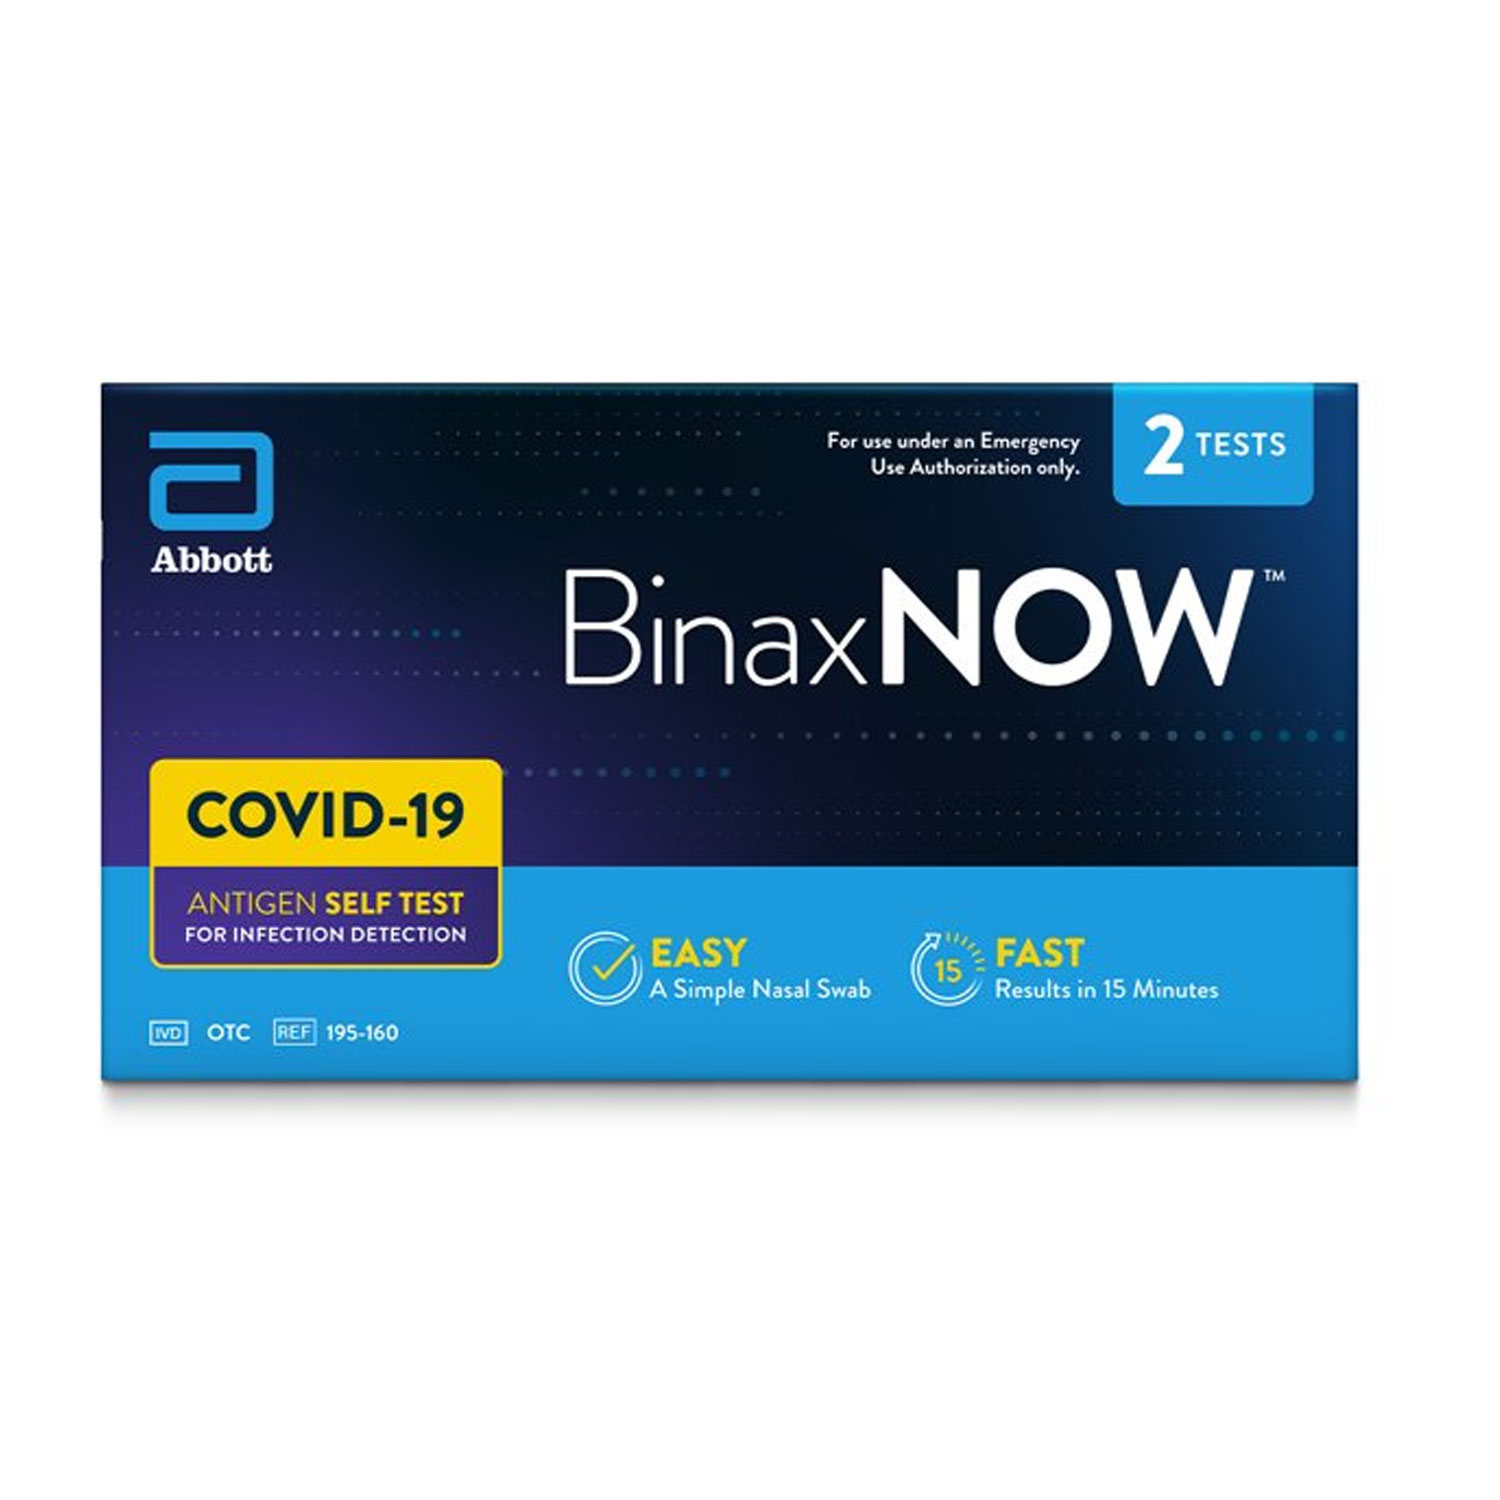 BinaxNOW COVID-19 Antigen Self-Test At Home Kit